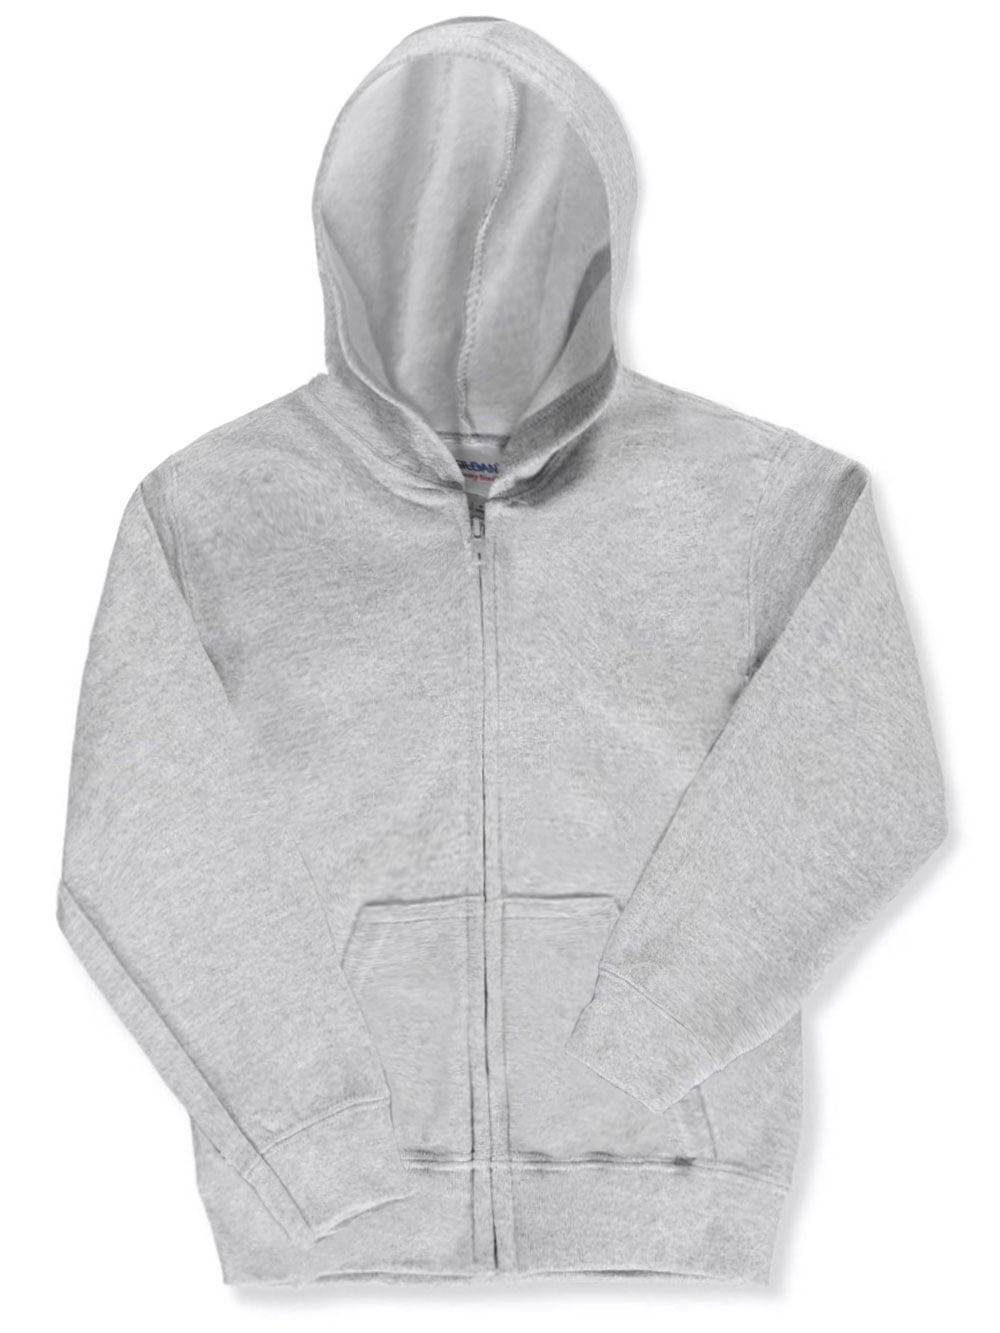 Gildan Basic Fleece Zip-Up Unisex Hoodie Youth Sizes S - XL